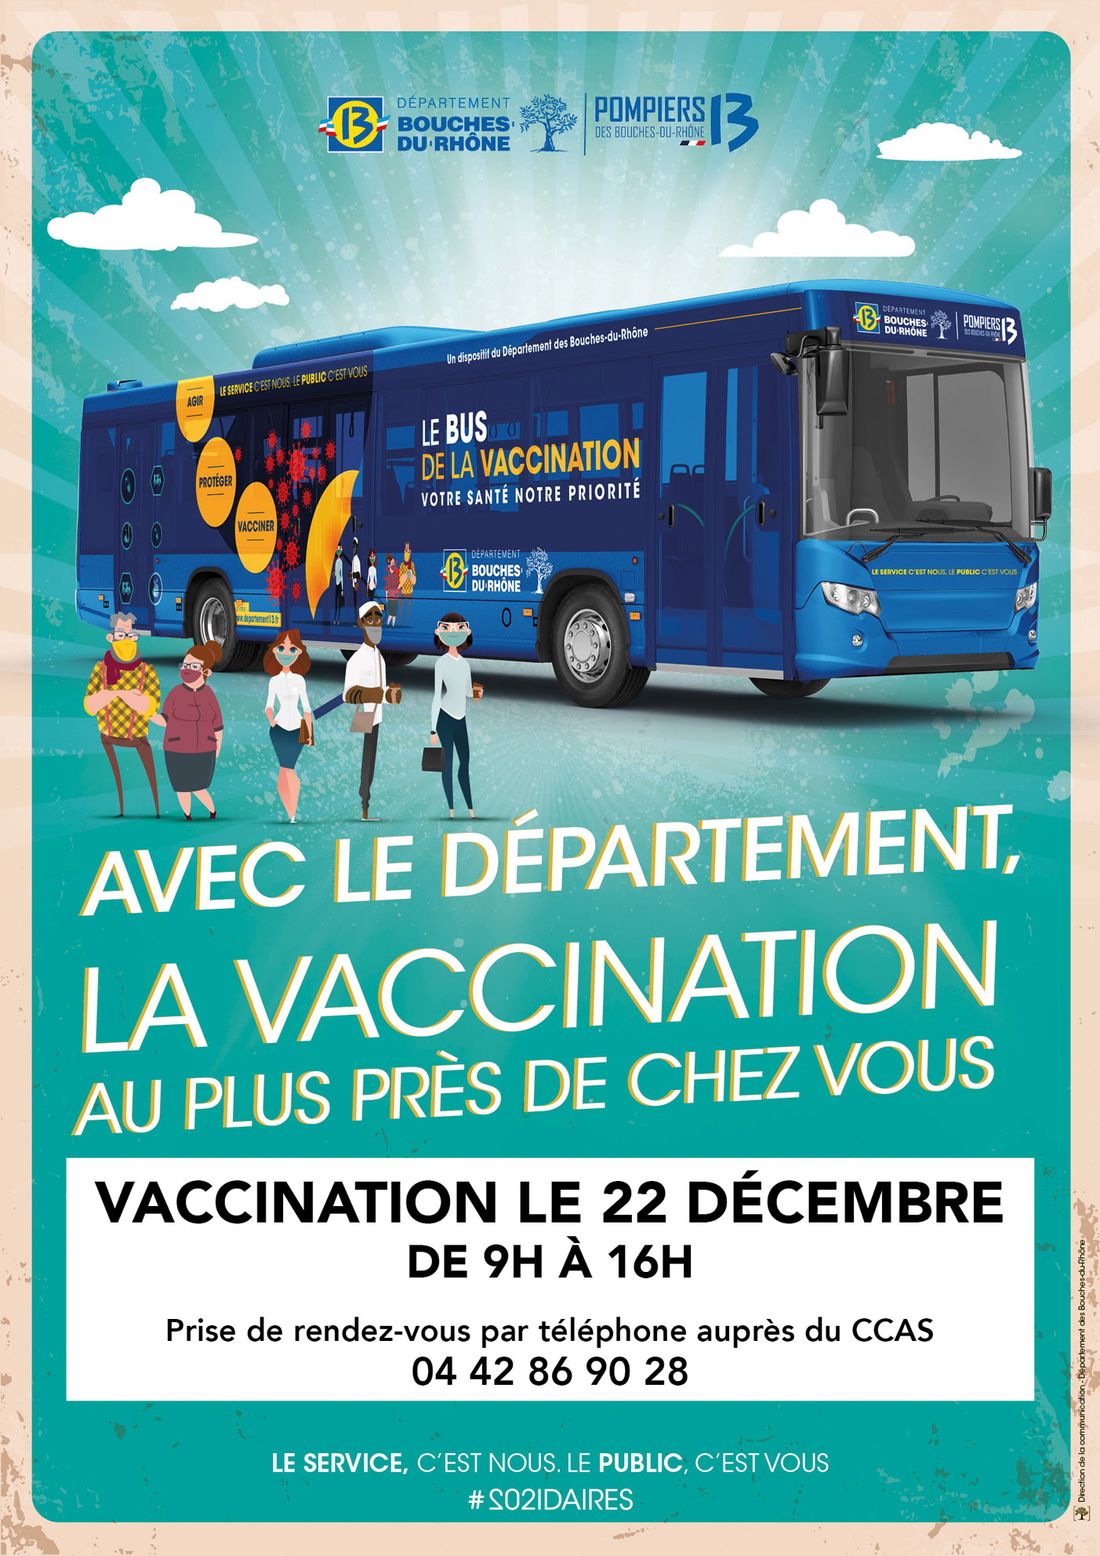 [ SOCIETE / SANTE ]: Le bus de la vaccination à Port Saint Louis du Rhône